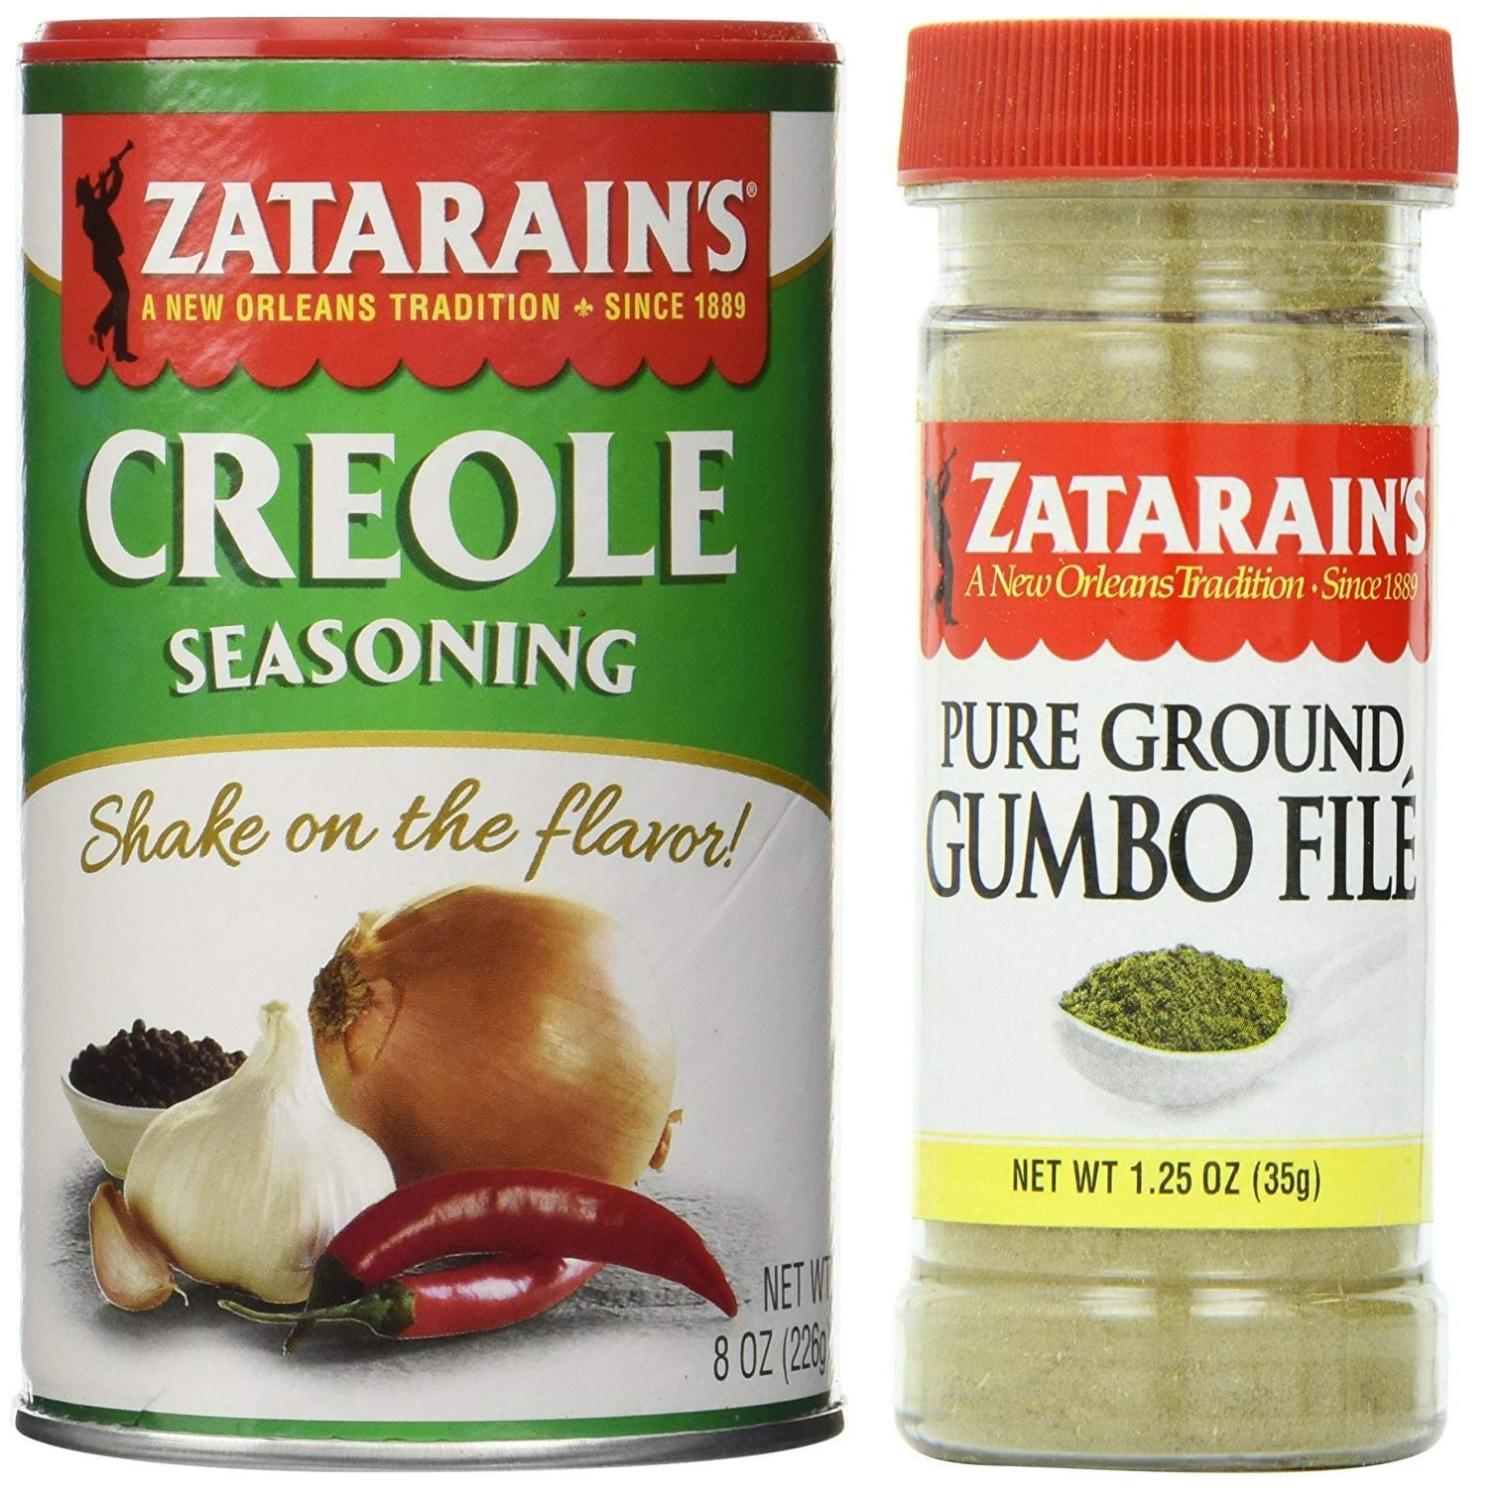 Zatarain's Cajun Seasoning Bundle - 1 each of Zatarain's Creole